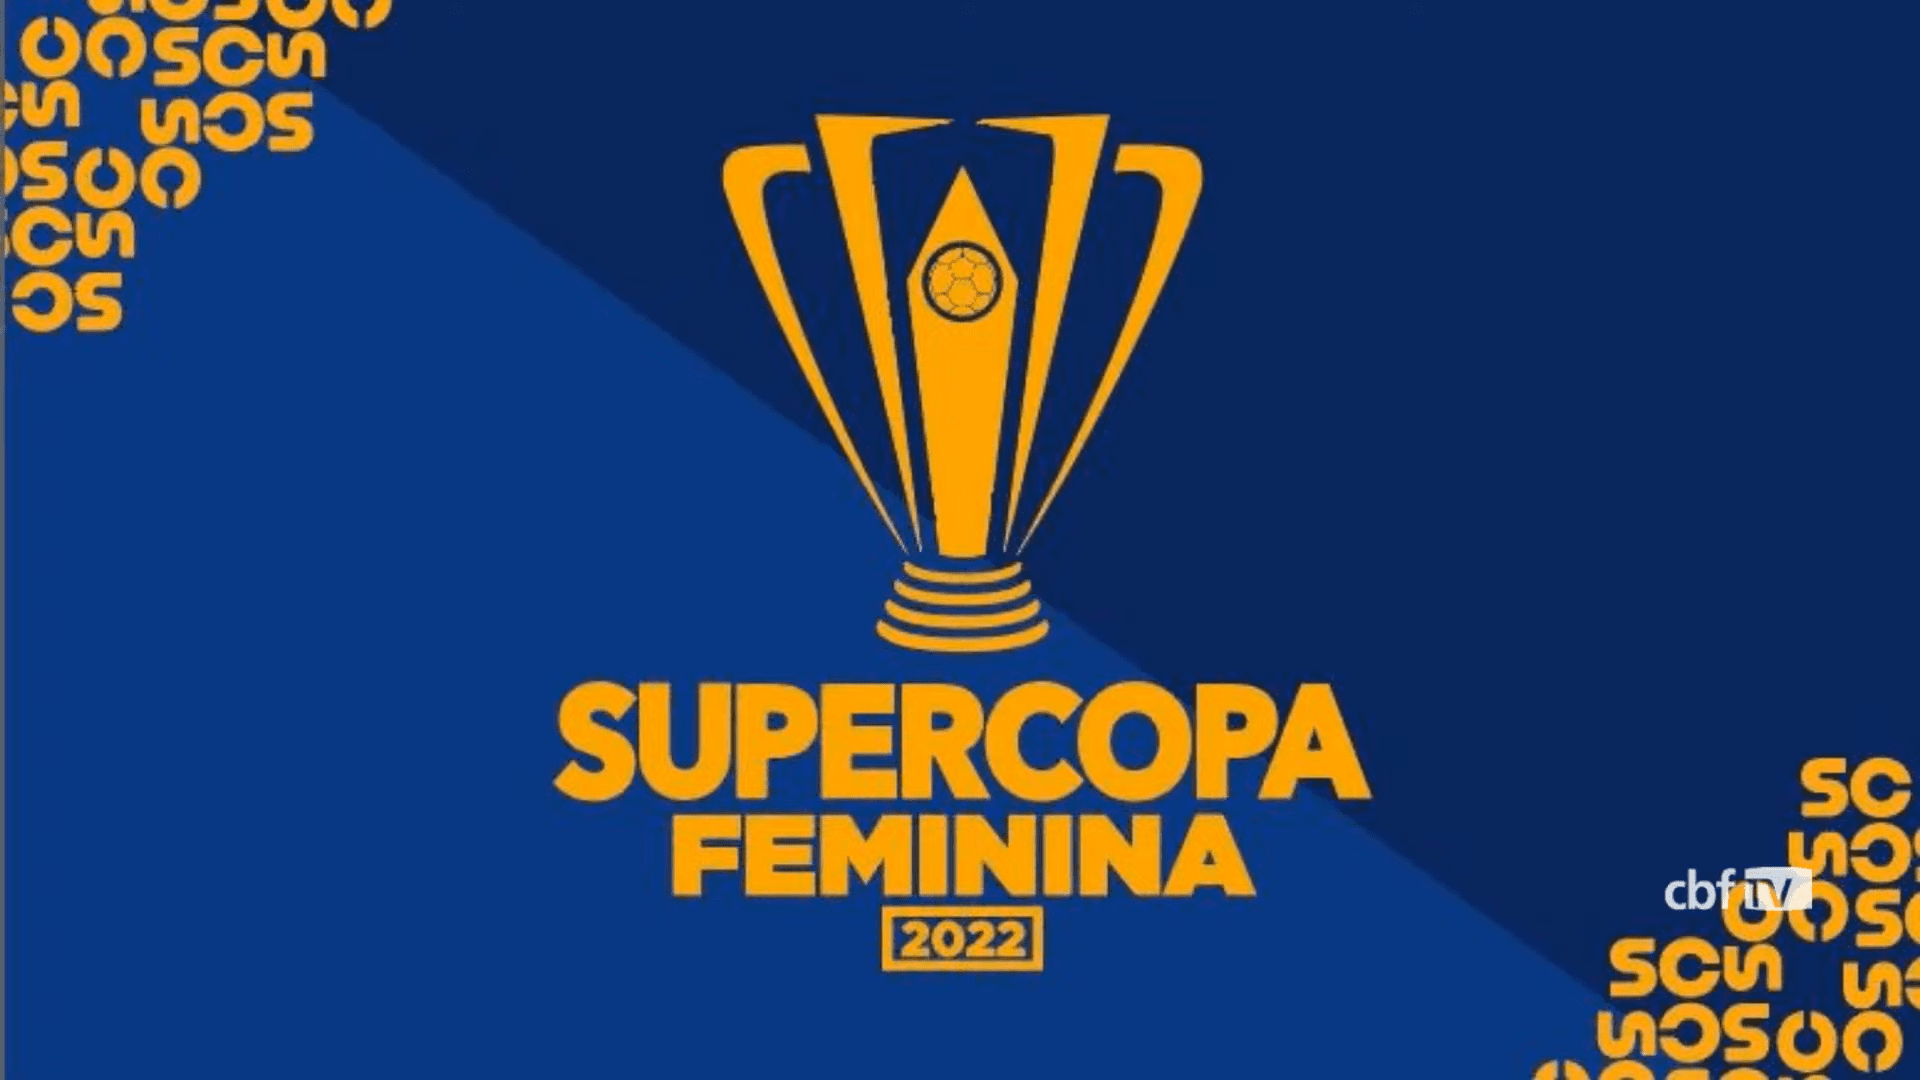 Supercopa do Brasil Feminina